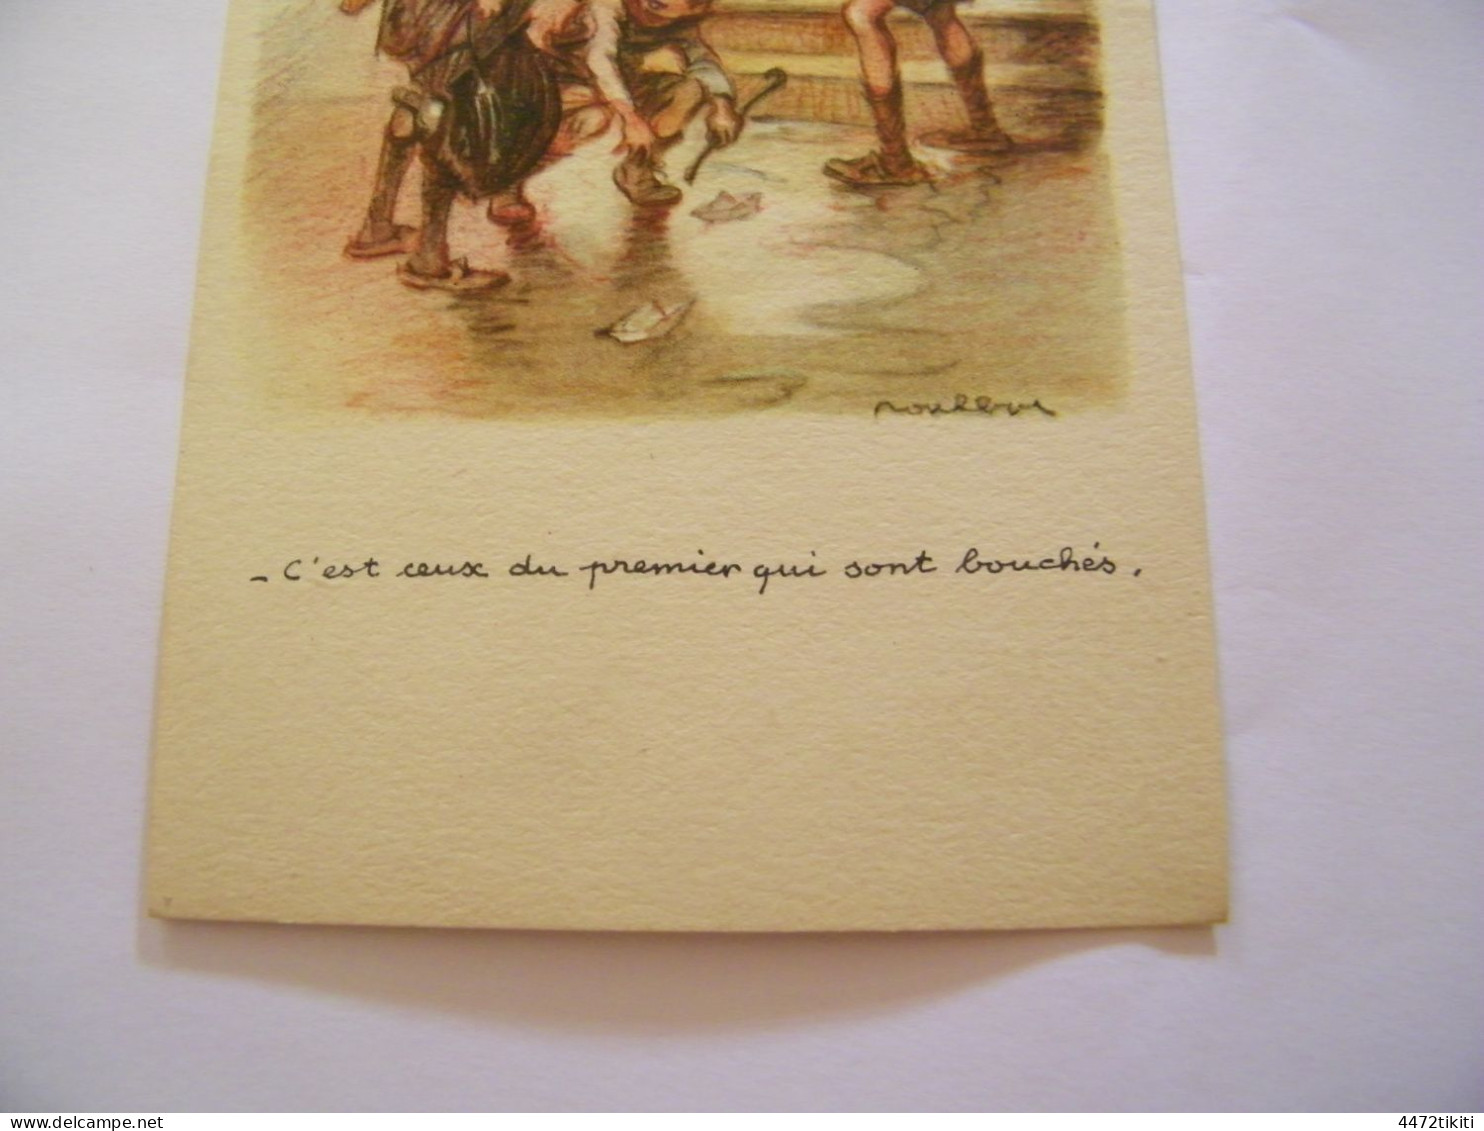 CPA - Illustrateur Poulbot - C'Est Ceux Du Premier - 1920 - SUP (HT 91) - Poulbot, F.